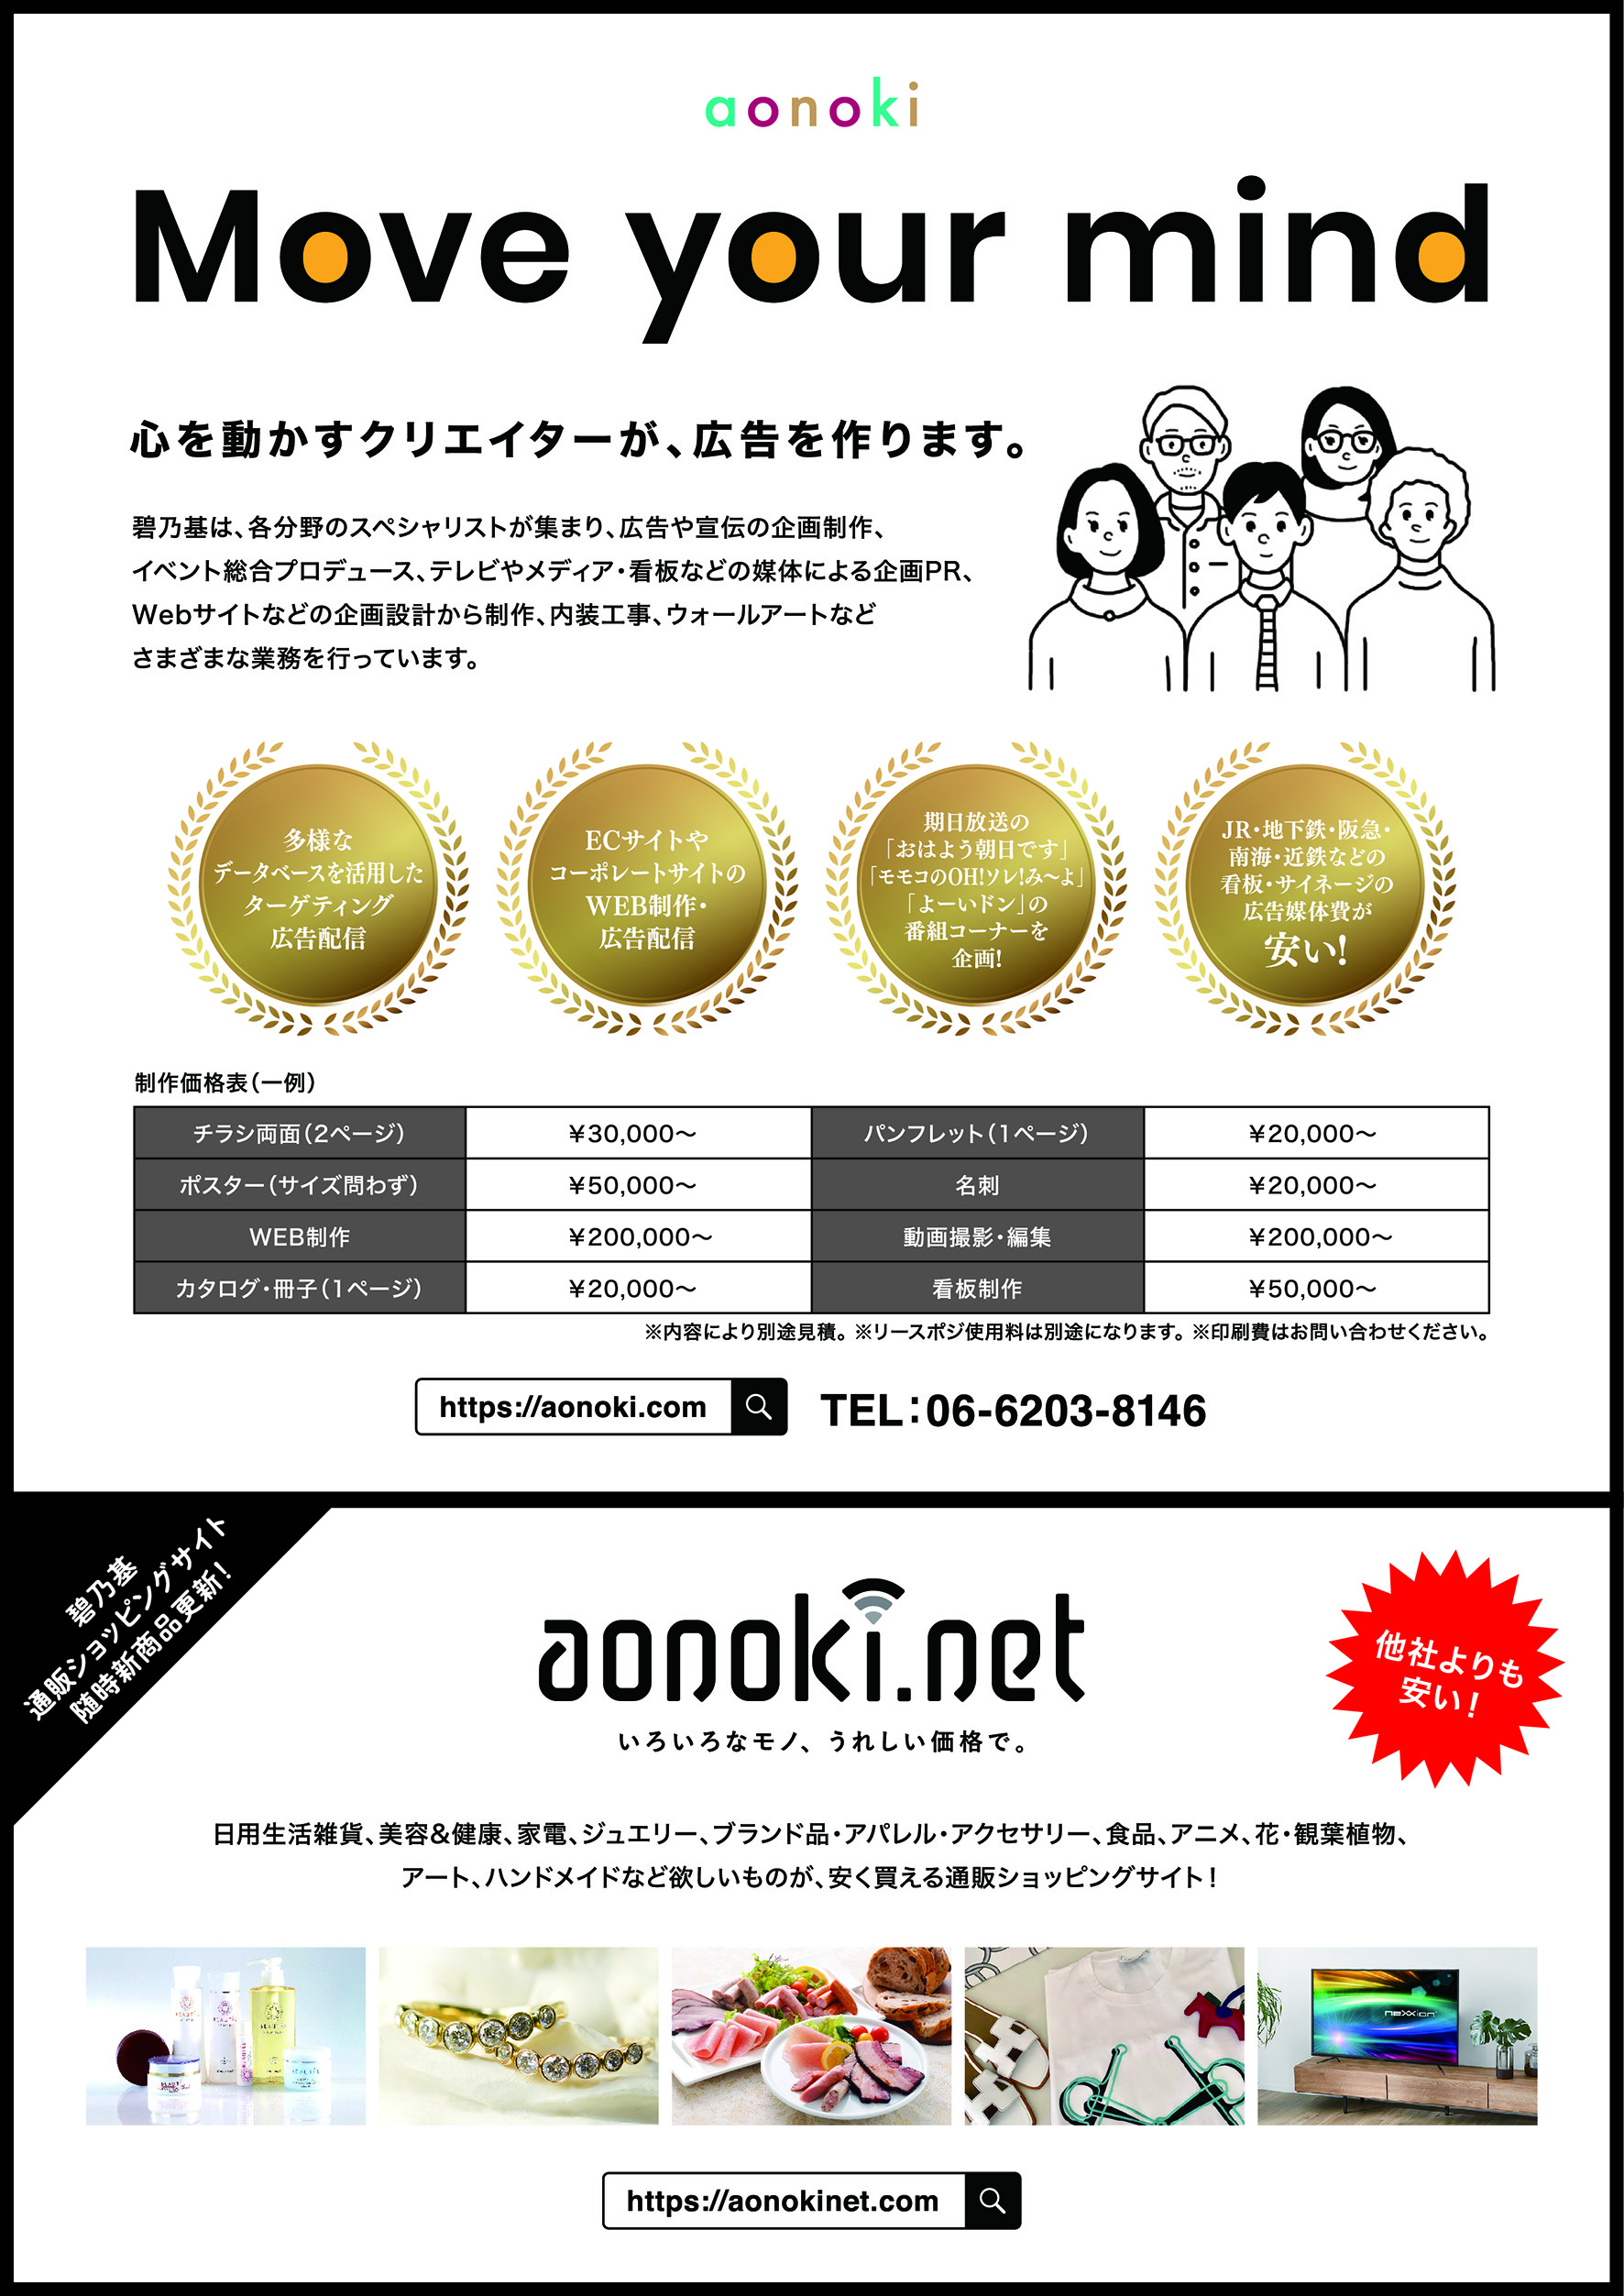 毎月定期的UP！広告代理店碧乃基チラシと通販サイトaonoki.net 商品情報